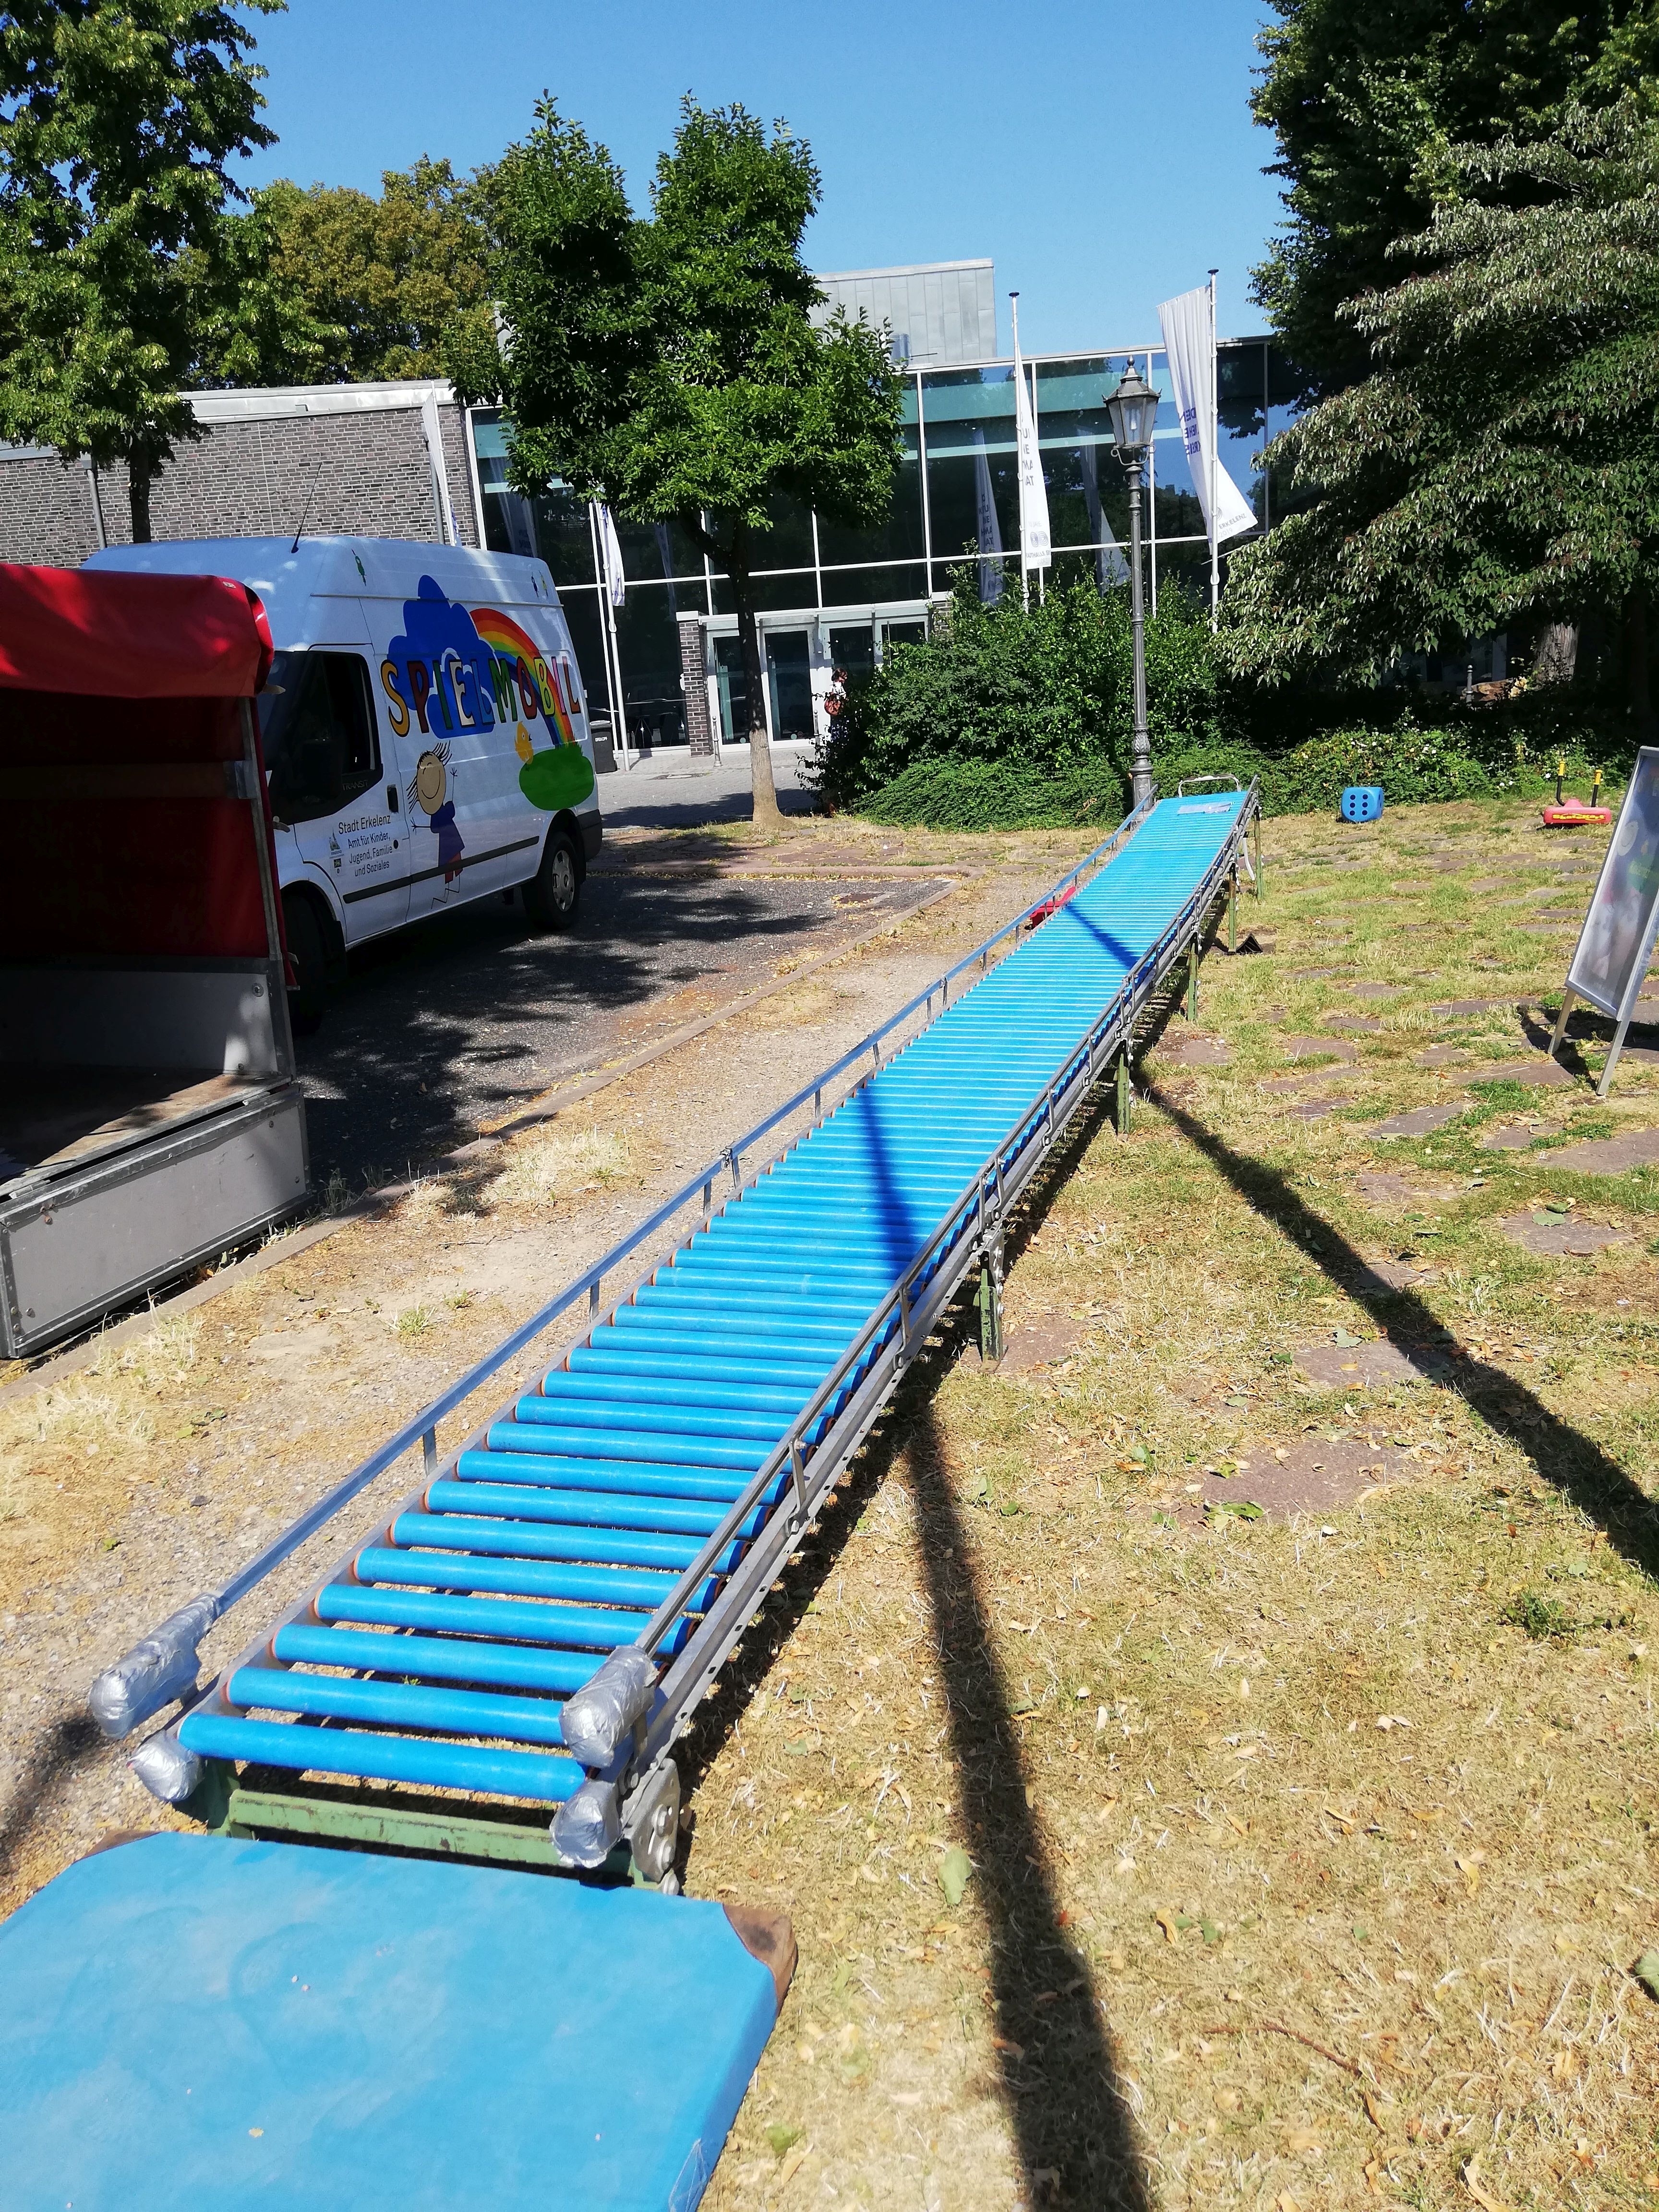 Rollenrutsche: Die 10 Meter lange Rollenrutsche ist eine freistehende stationäre Rutsche, bei dem die Rutschfläche aus Rollen besteht.